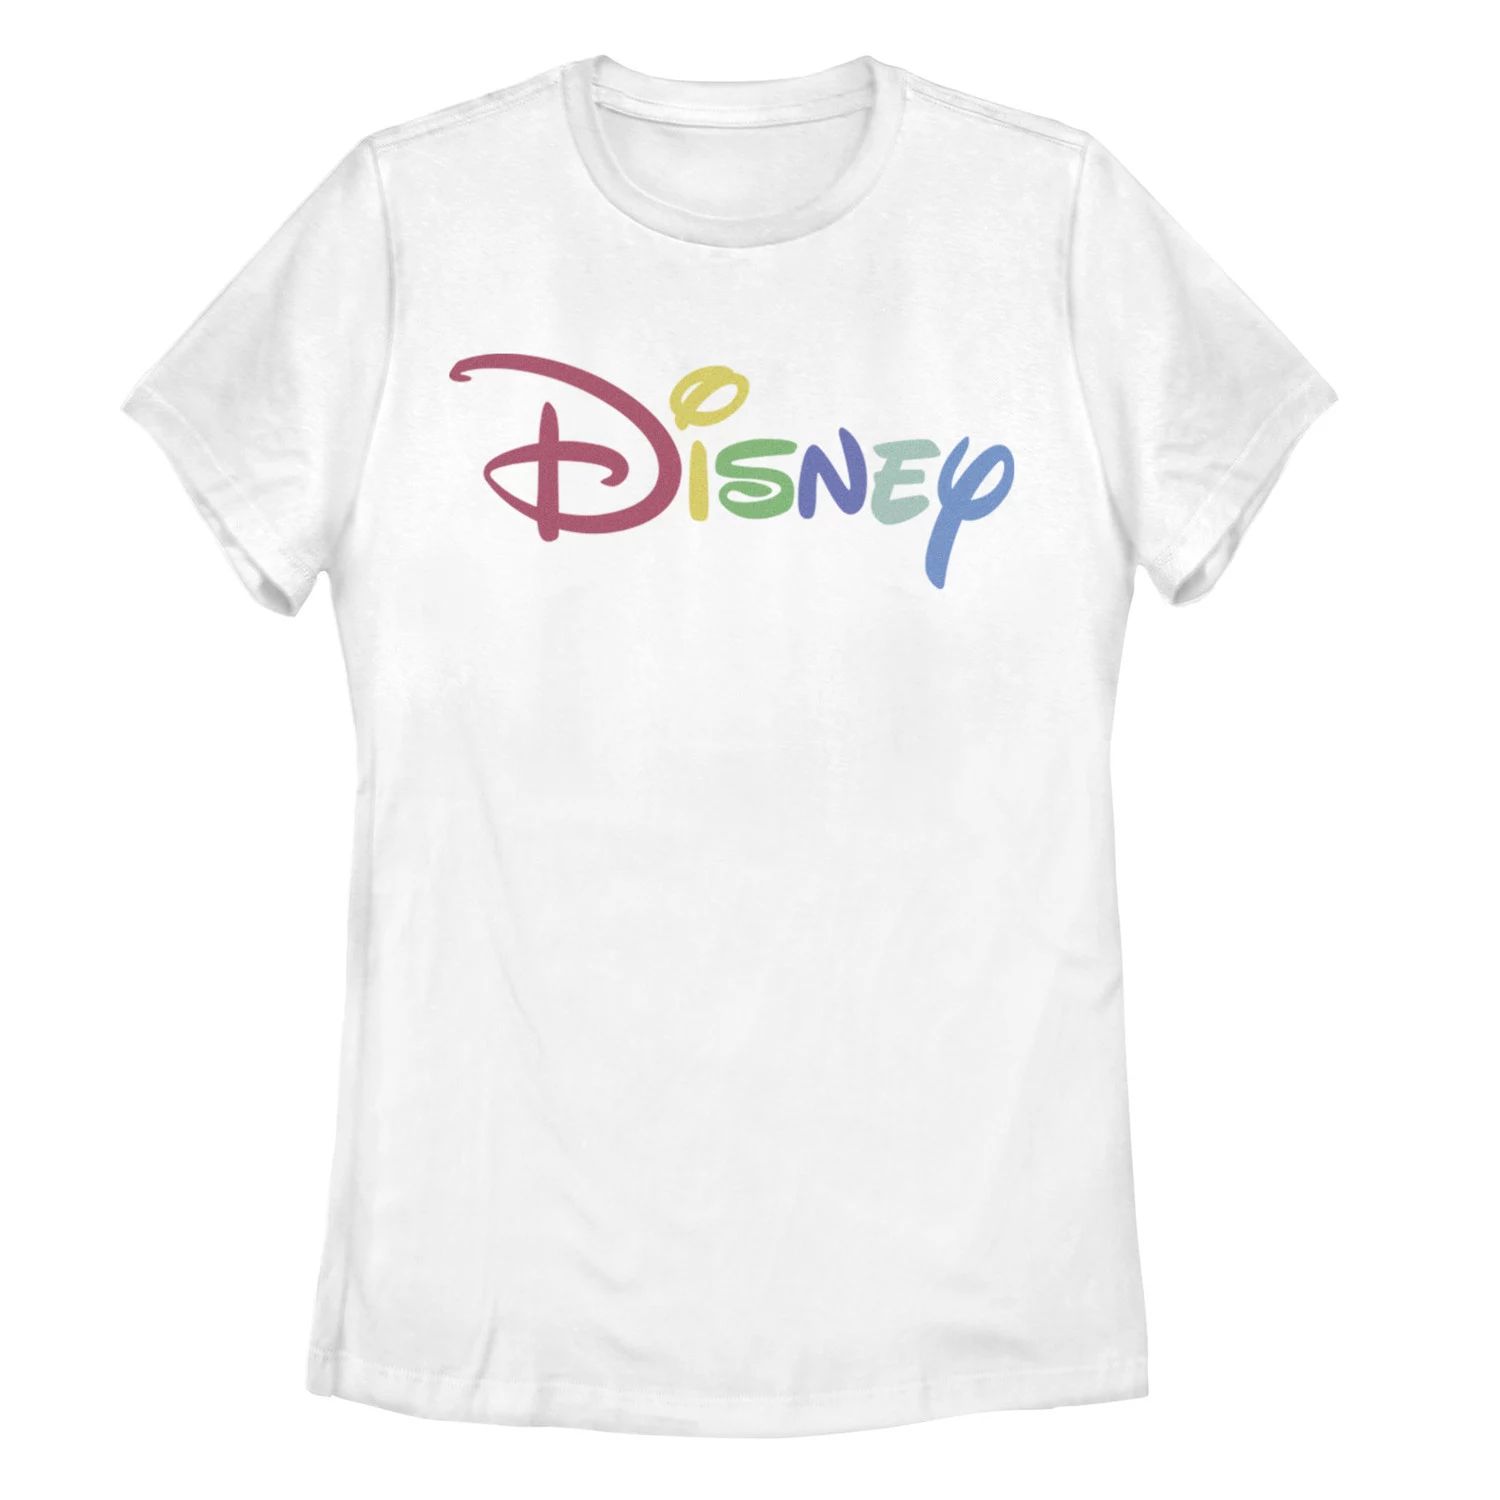 Футболка с логотипом Disney Rainbow для юниоров Licensed Character, белый